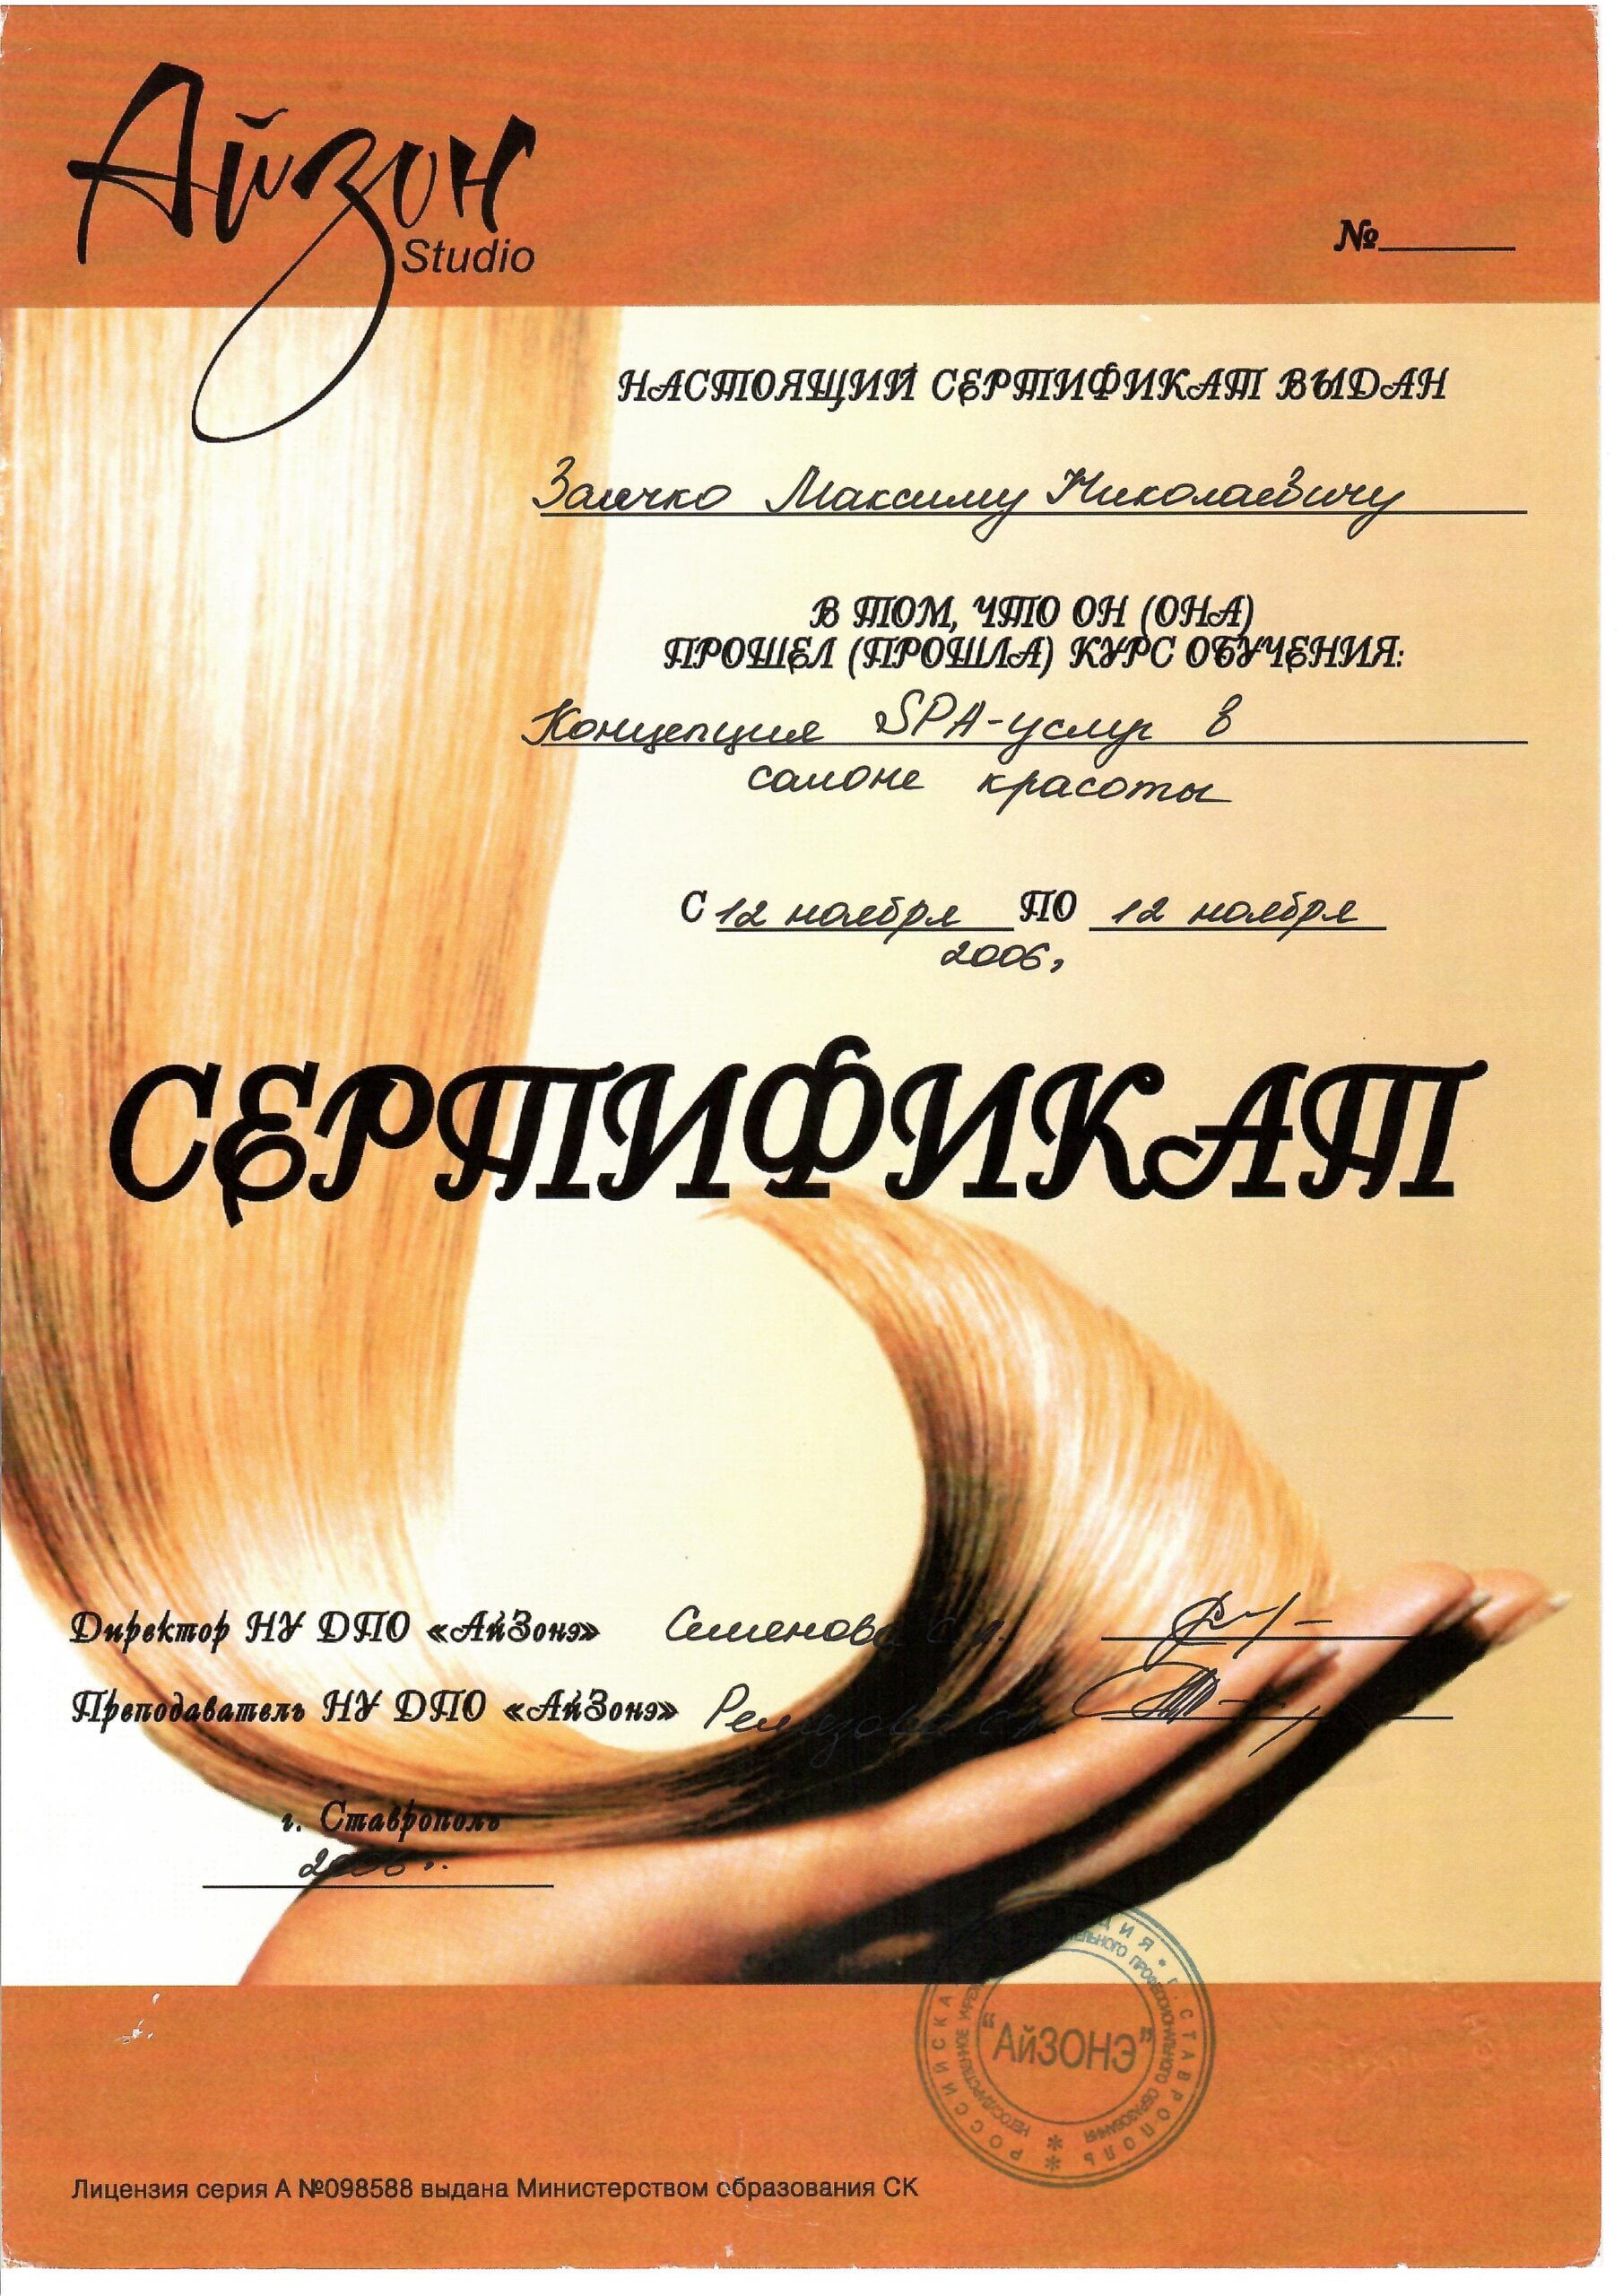 zaichko-maksim-diplomy-i-sertifikaty-16